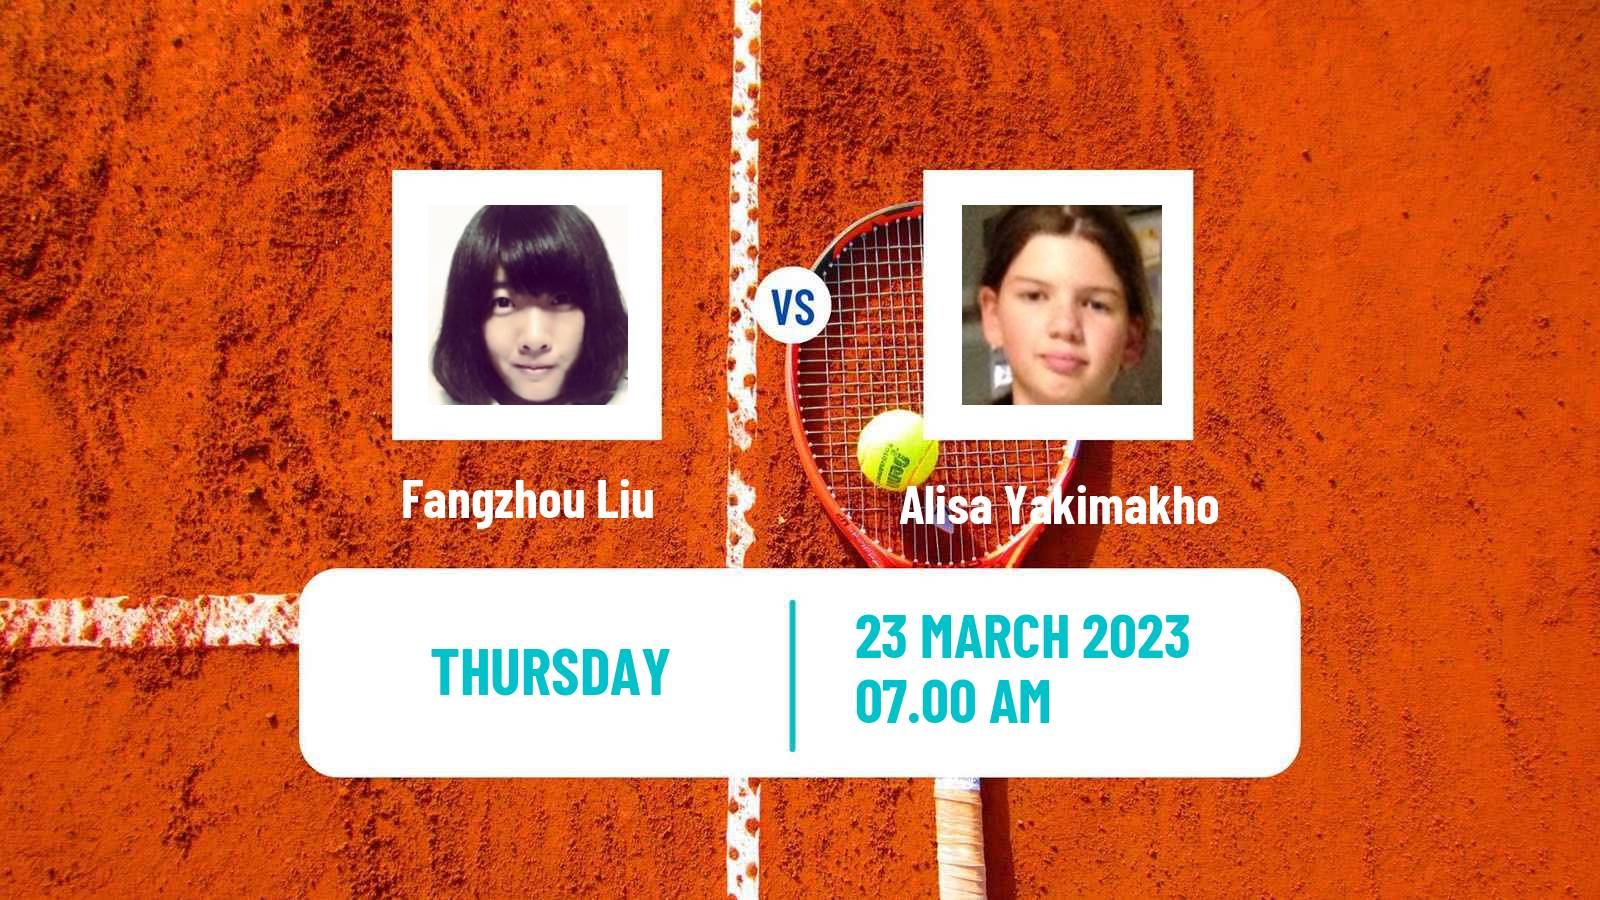 Tennis ITF Tournaments Fangzhou Liu - Alisa Yakimakho